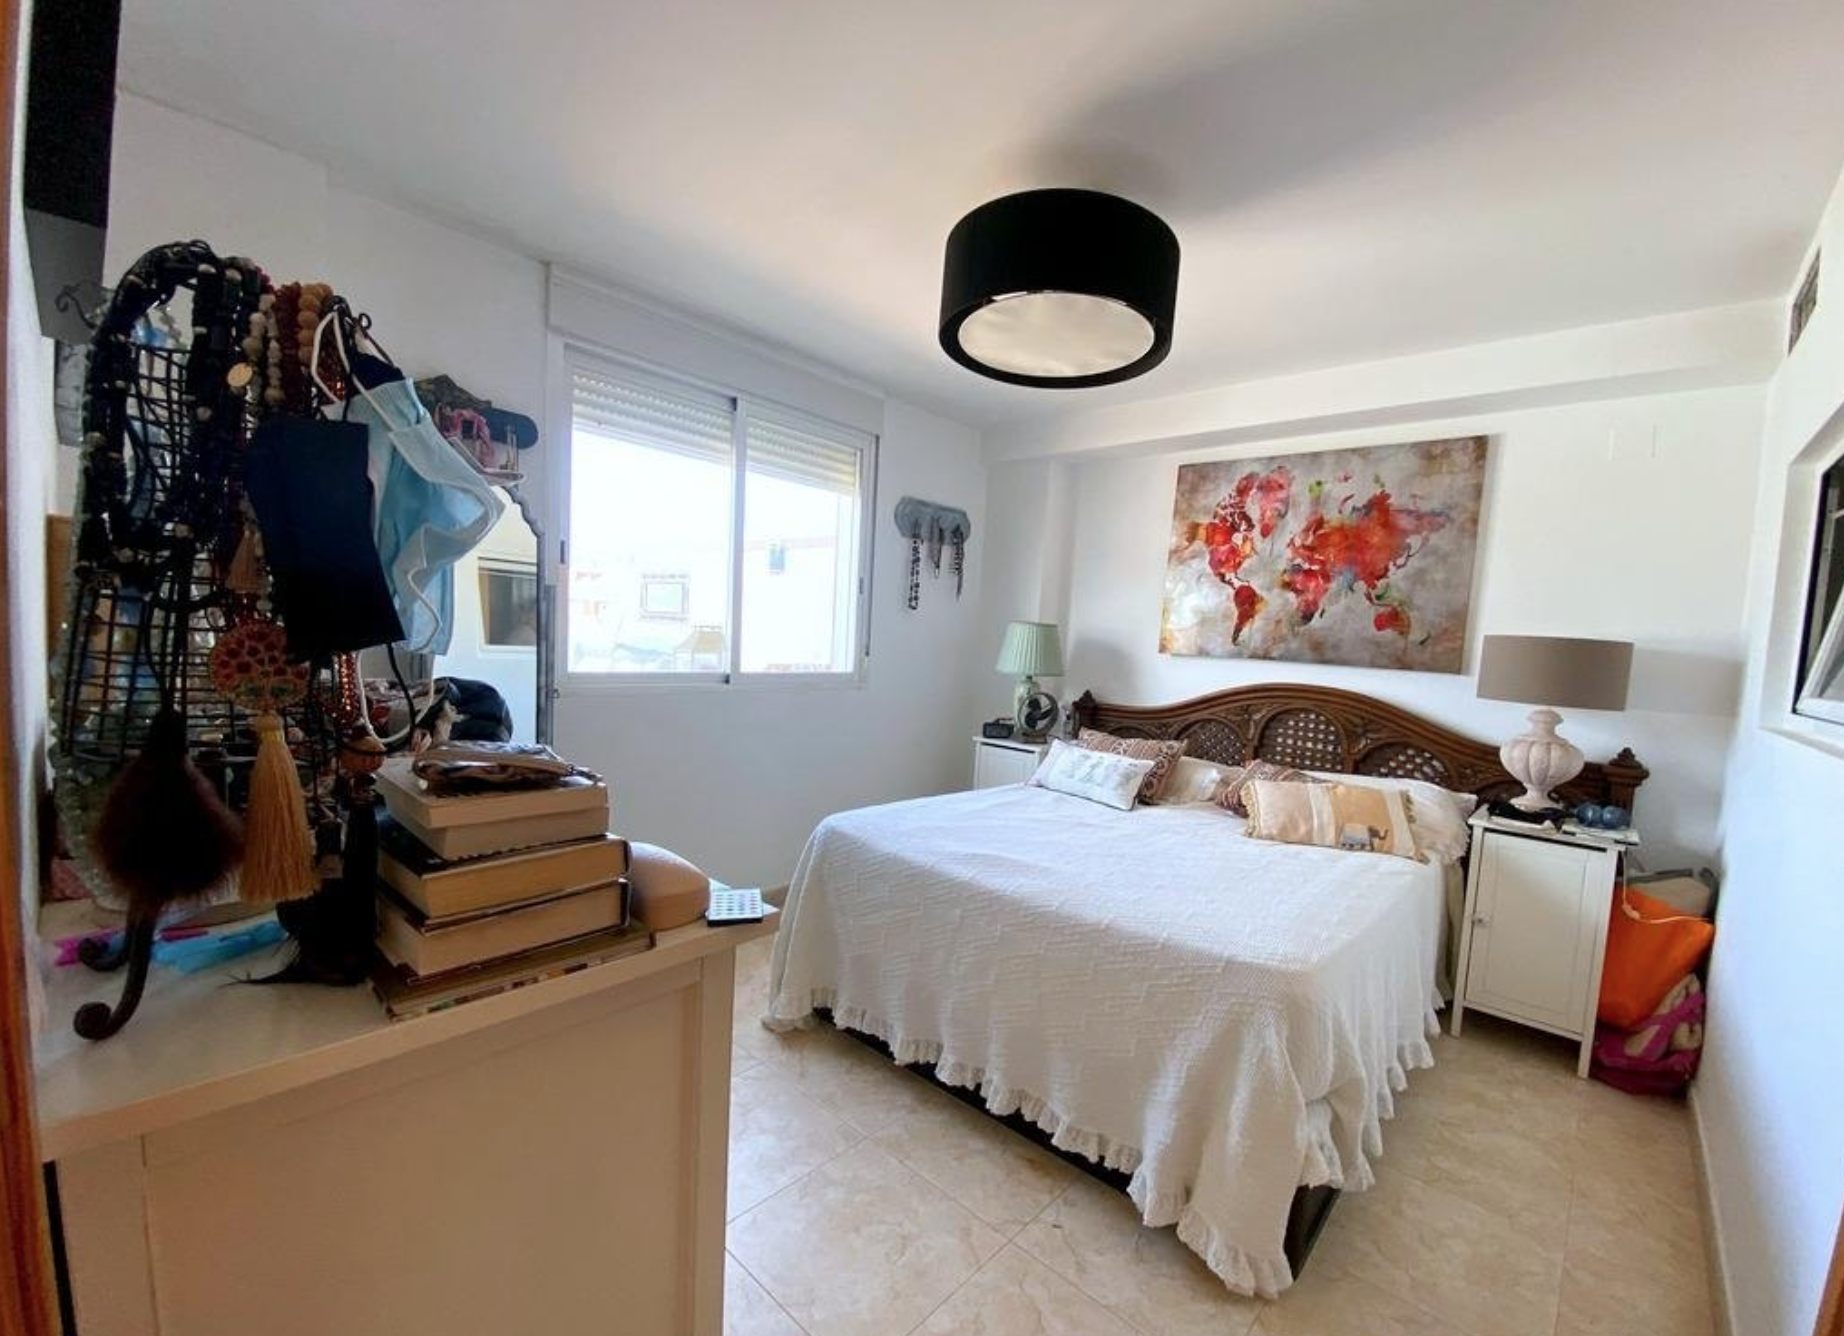 Penthouse en duplex de 3 chambres à vendre à Javea près de la plage